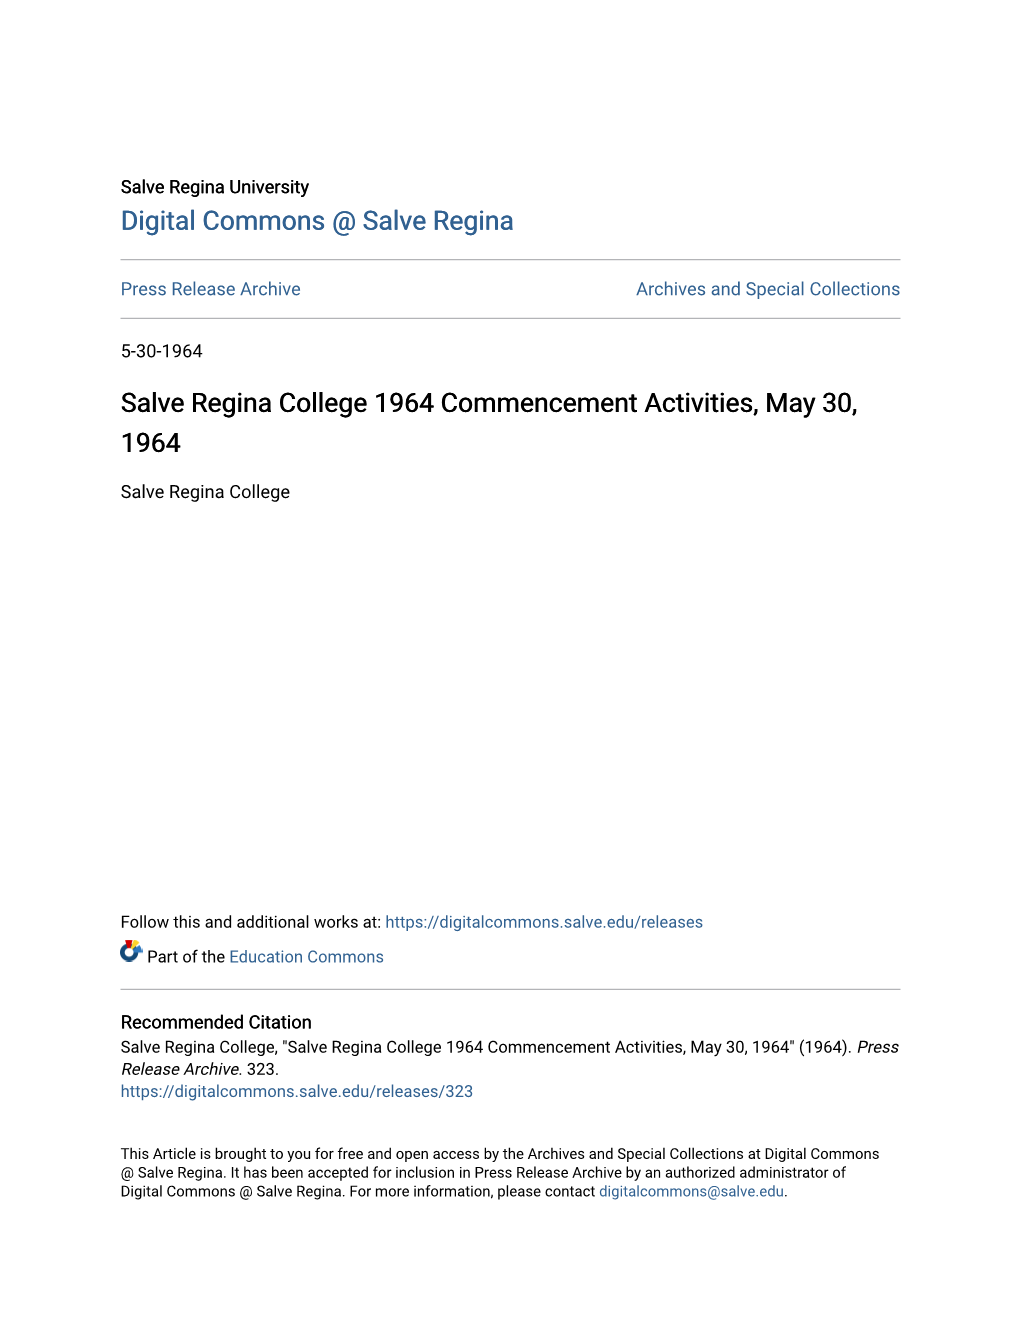 Salve Regina College 1964 Commencement Activities, May 30, 1964